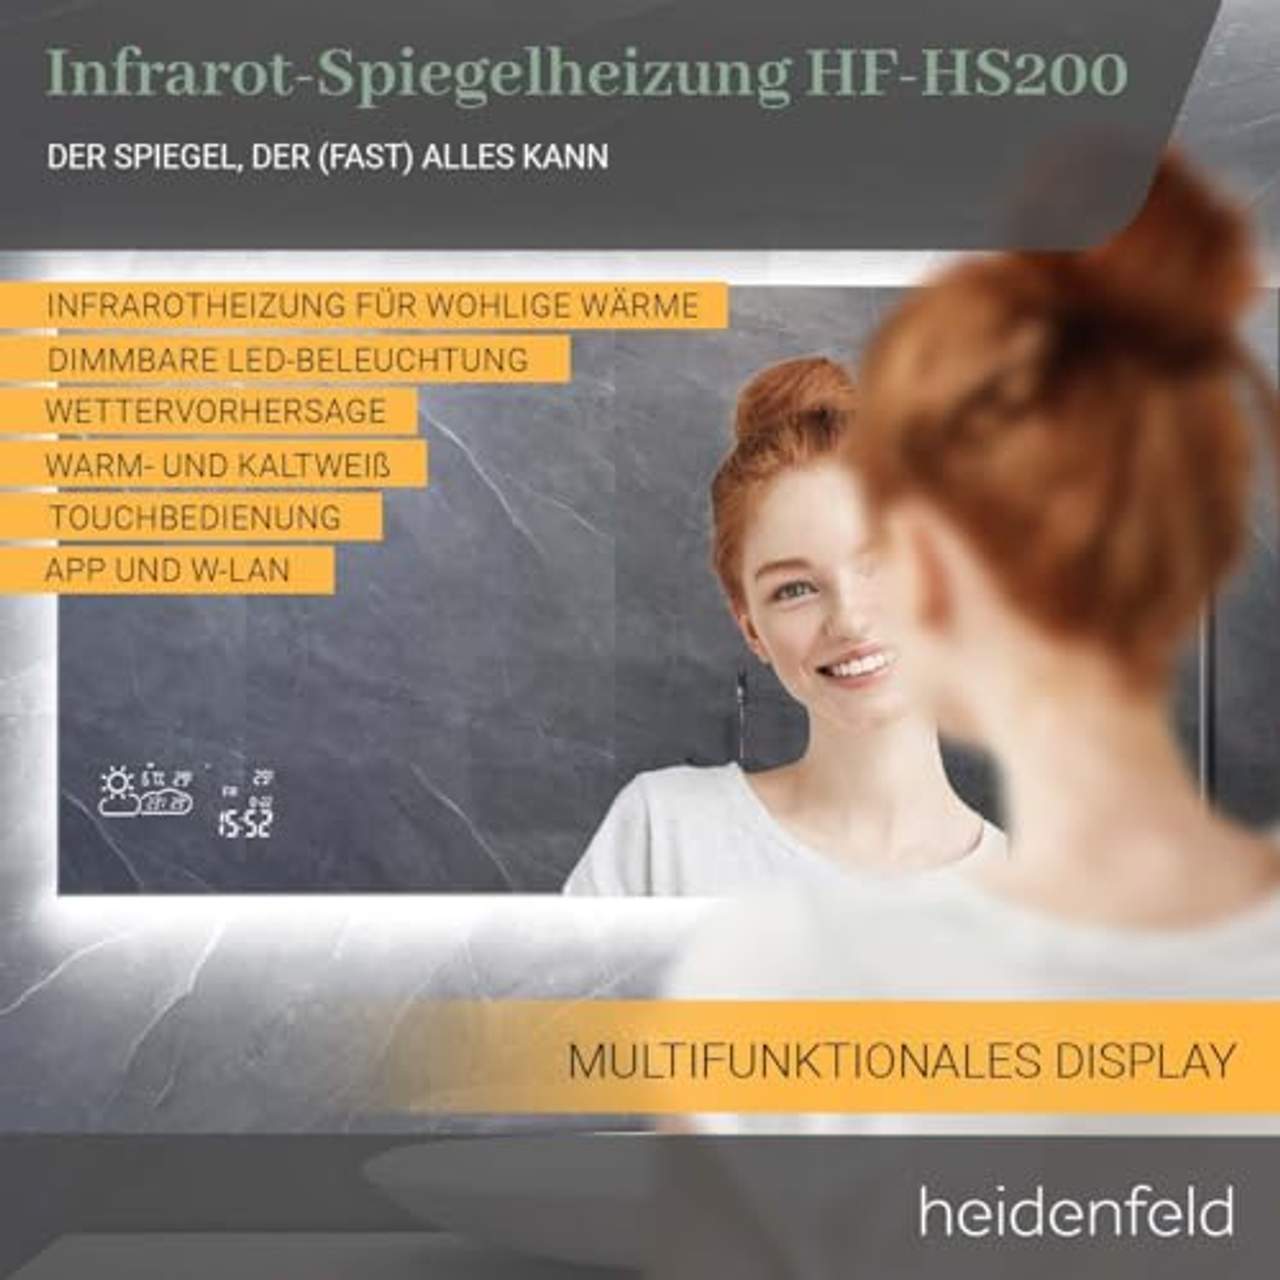 Heidenfeld Infrarotheizung HF-HS200 mit Touchpanel